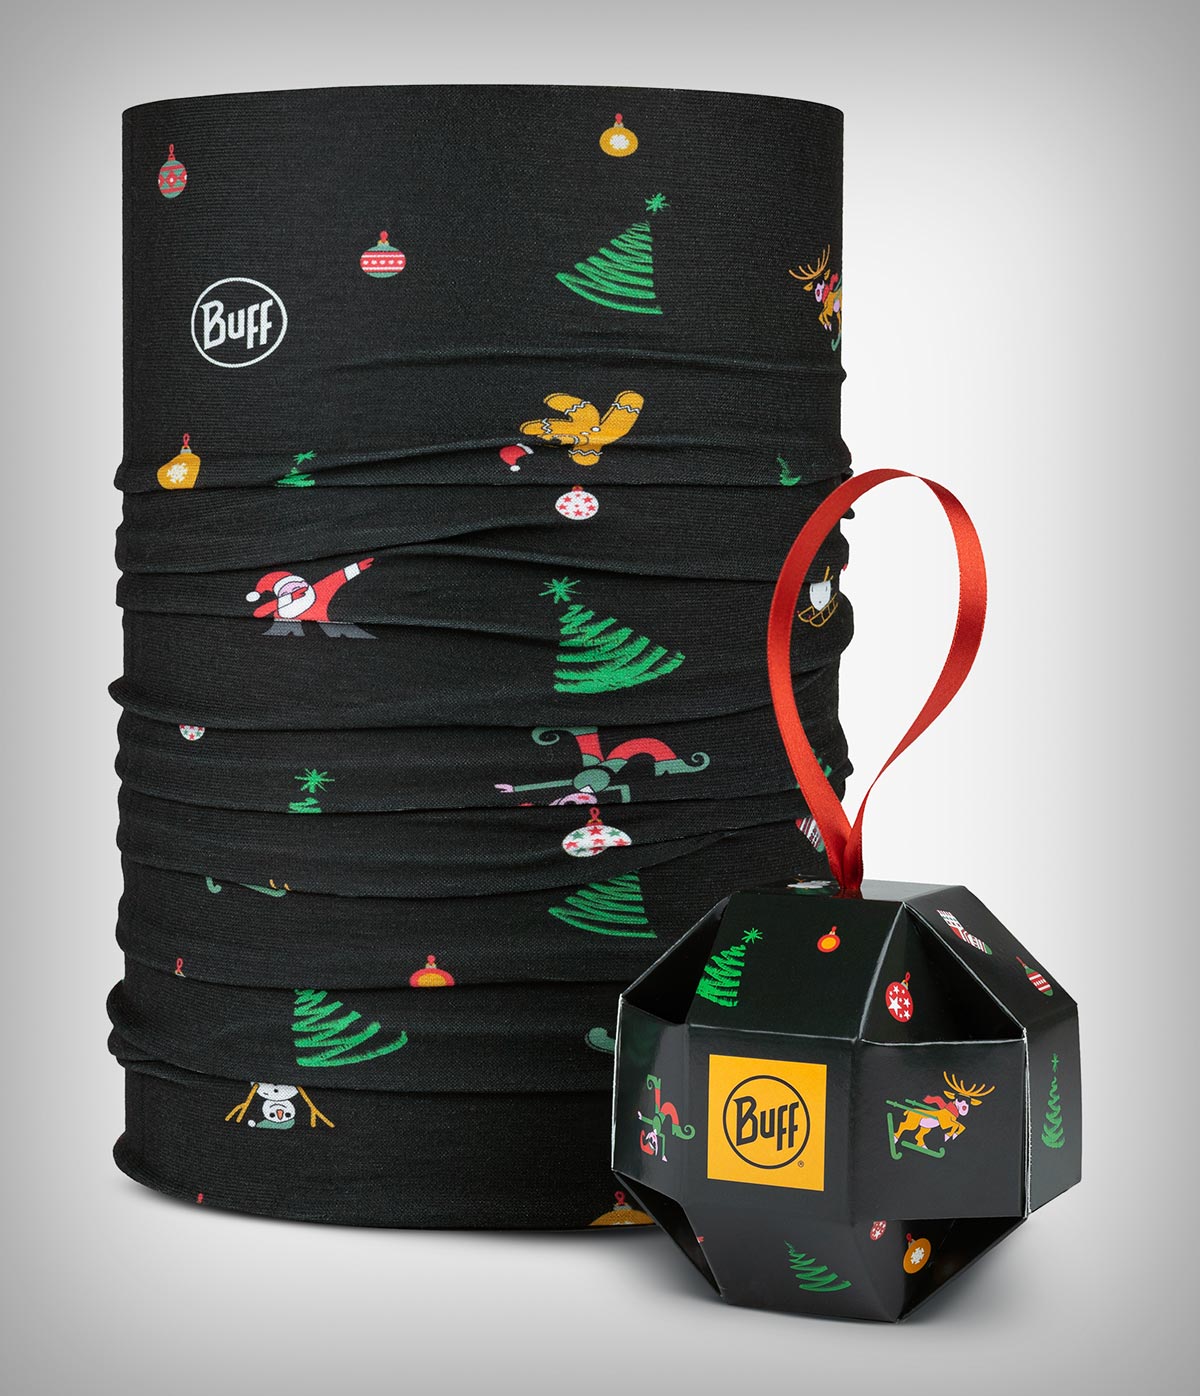 BUFF presenta su primera colección de tubulares diseñados con motivos navideños